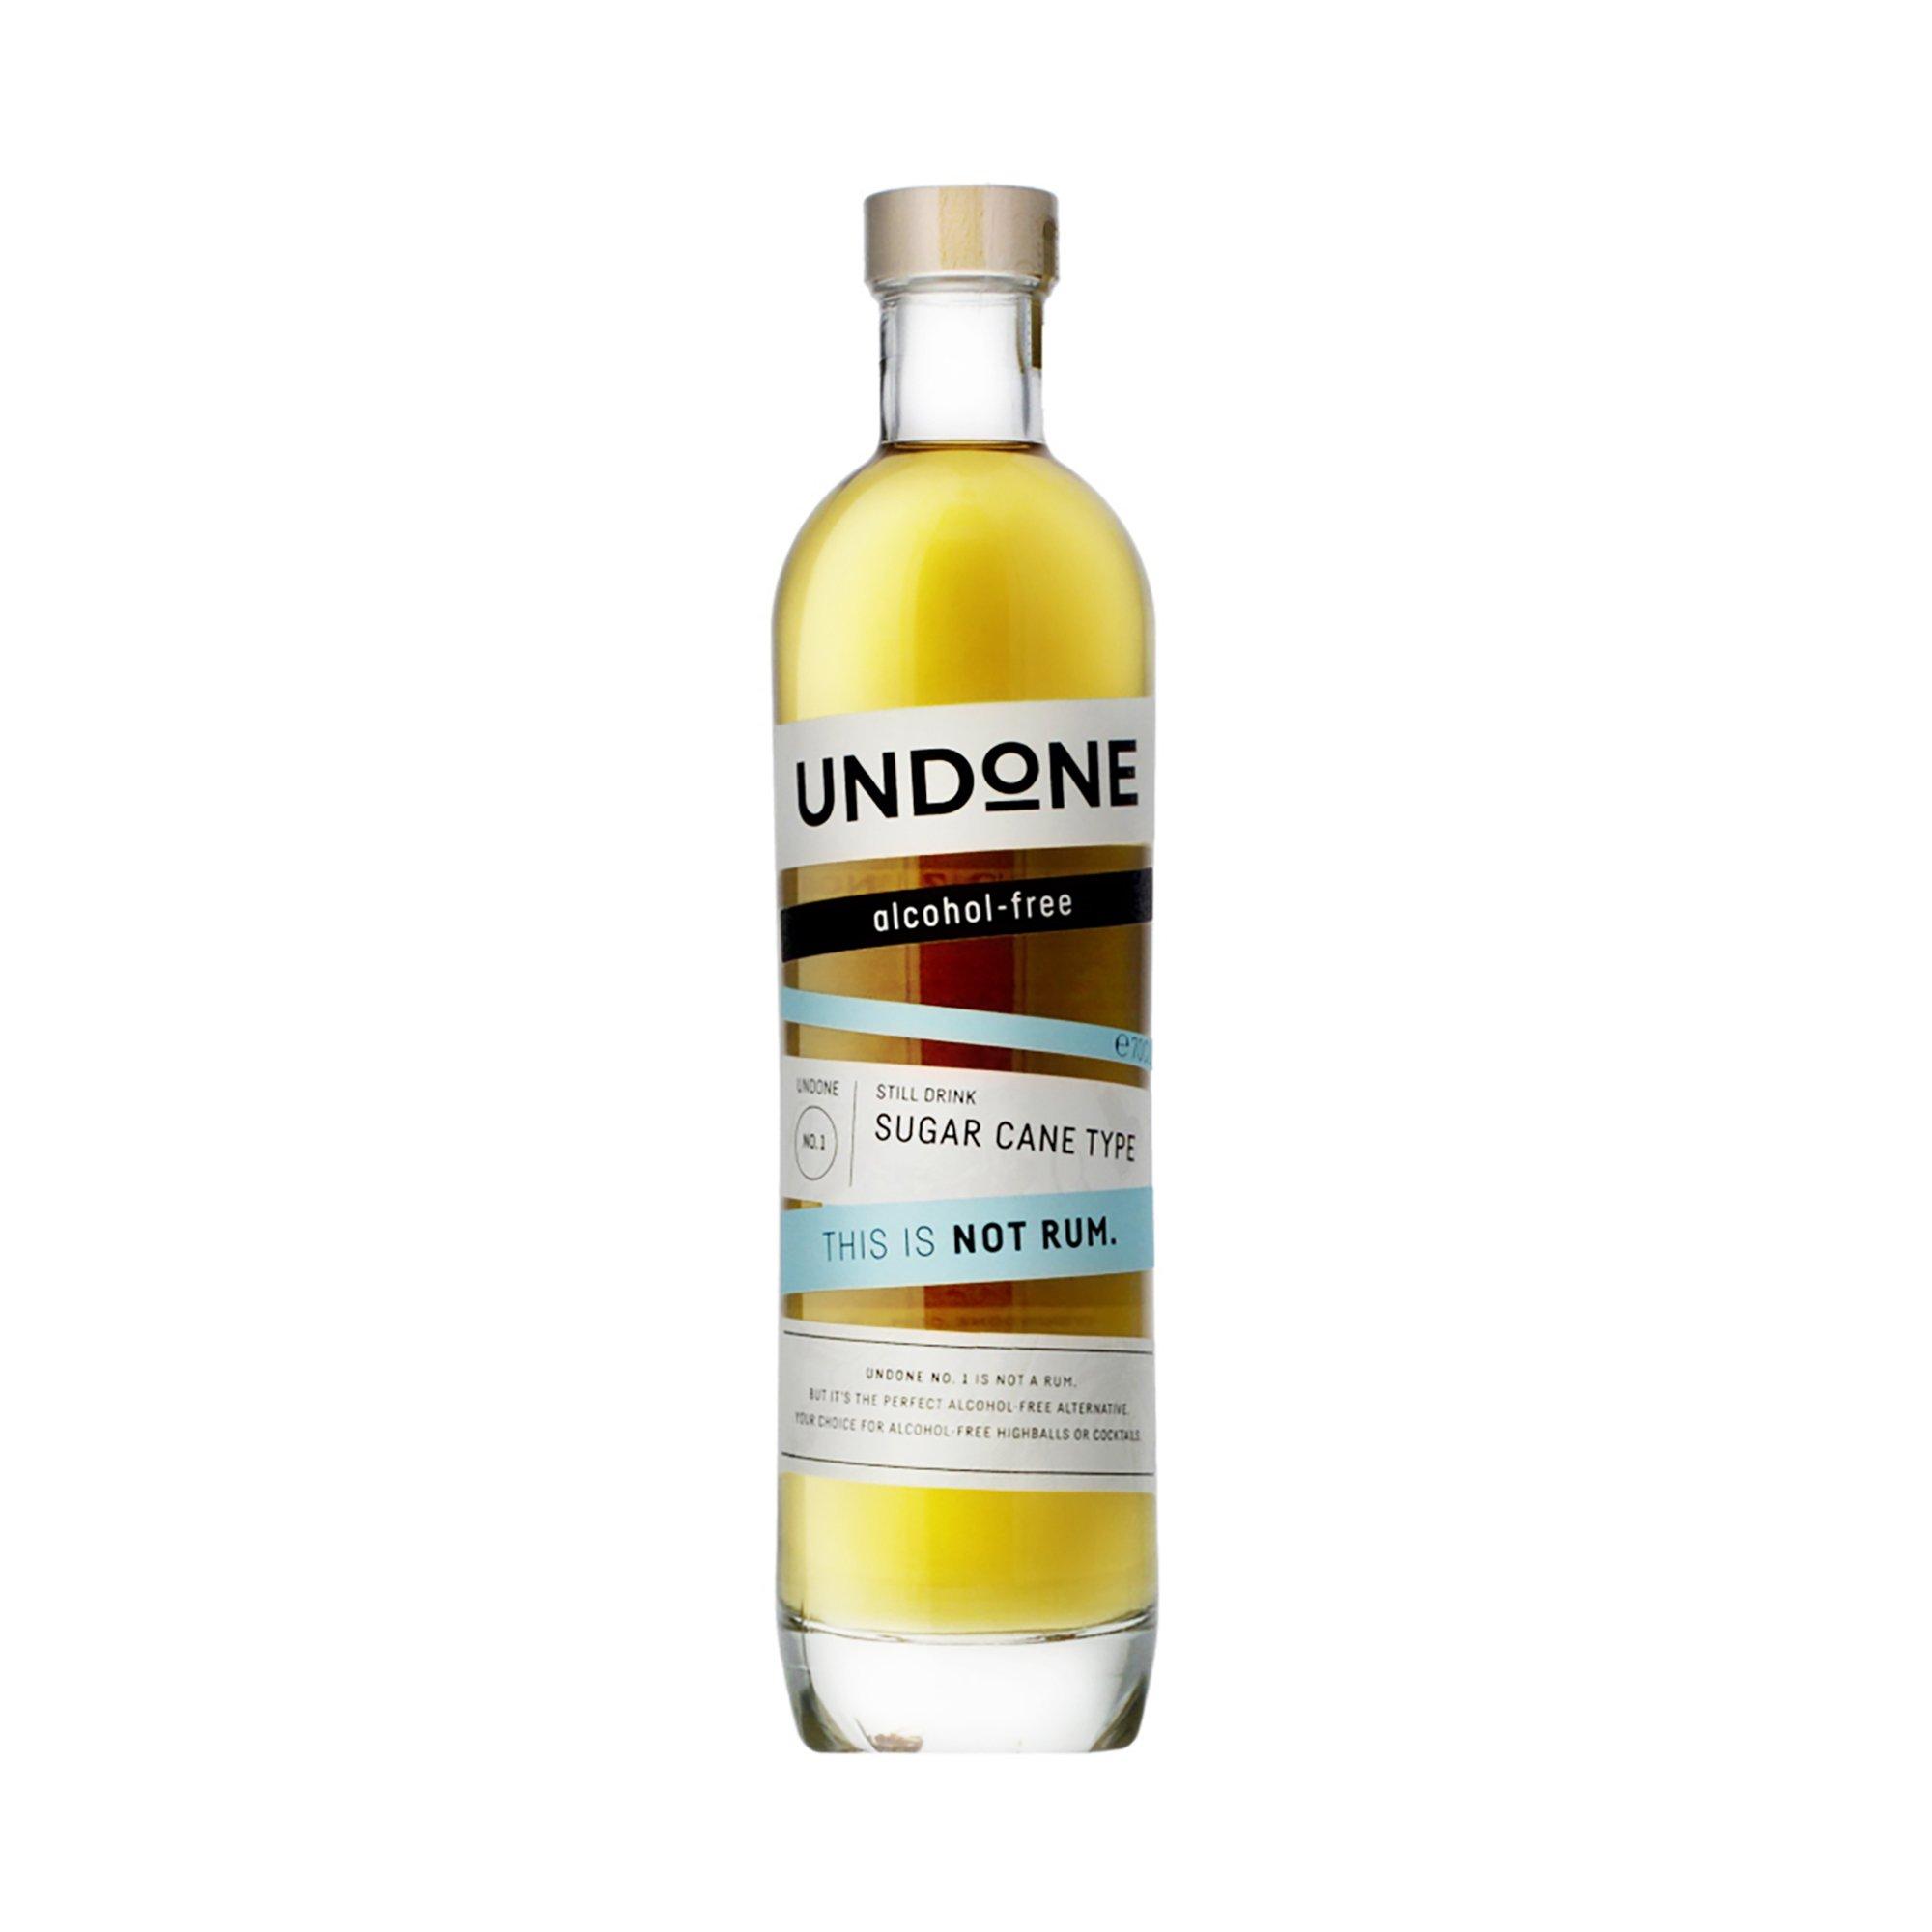 UNDONE No. 1 Sugar Cane alkoholfrei (Not Rum) | online kaufen - MANOR